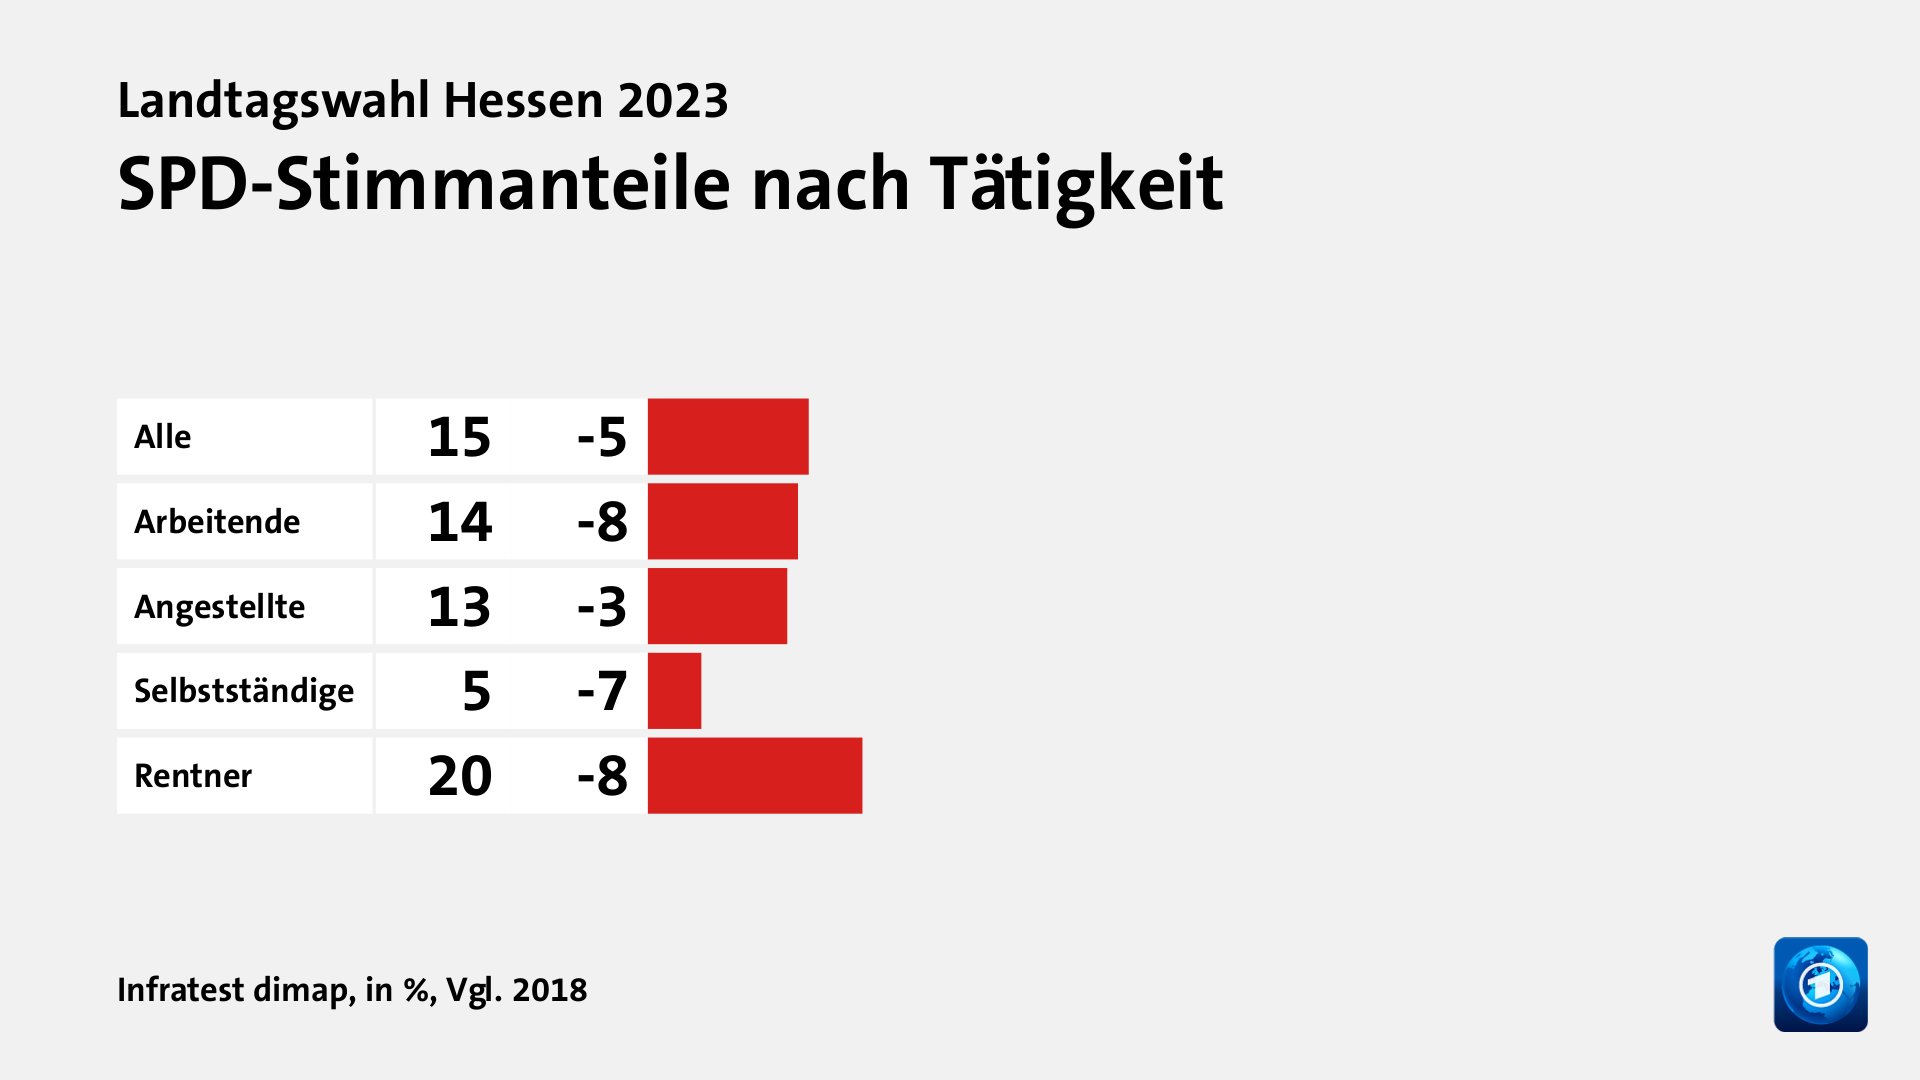 SPD-Stimmanteile nach Tätigkeit, in %, Vgl. 2018: Alle 15, Arbeitende 14, Angestellte 13, Selbstständige 5, Rentner 20, Quelle: Infratest dimap